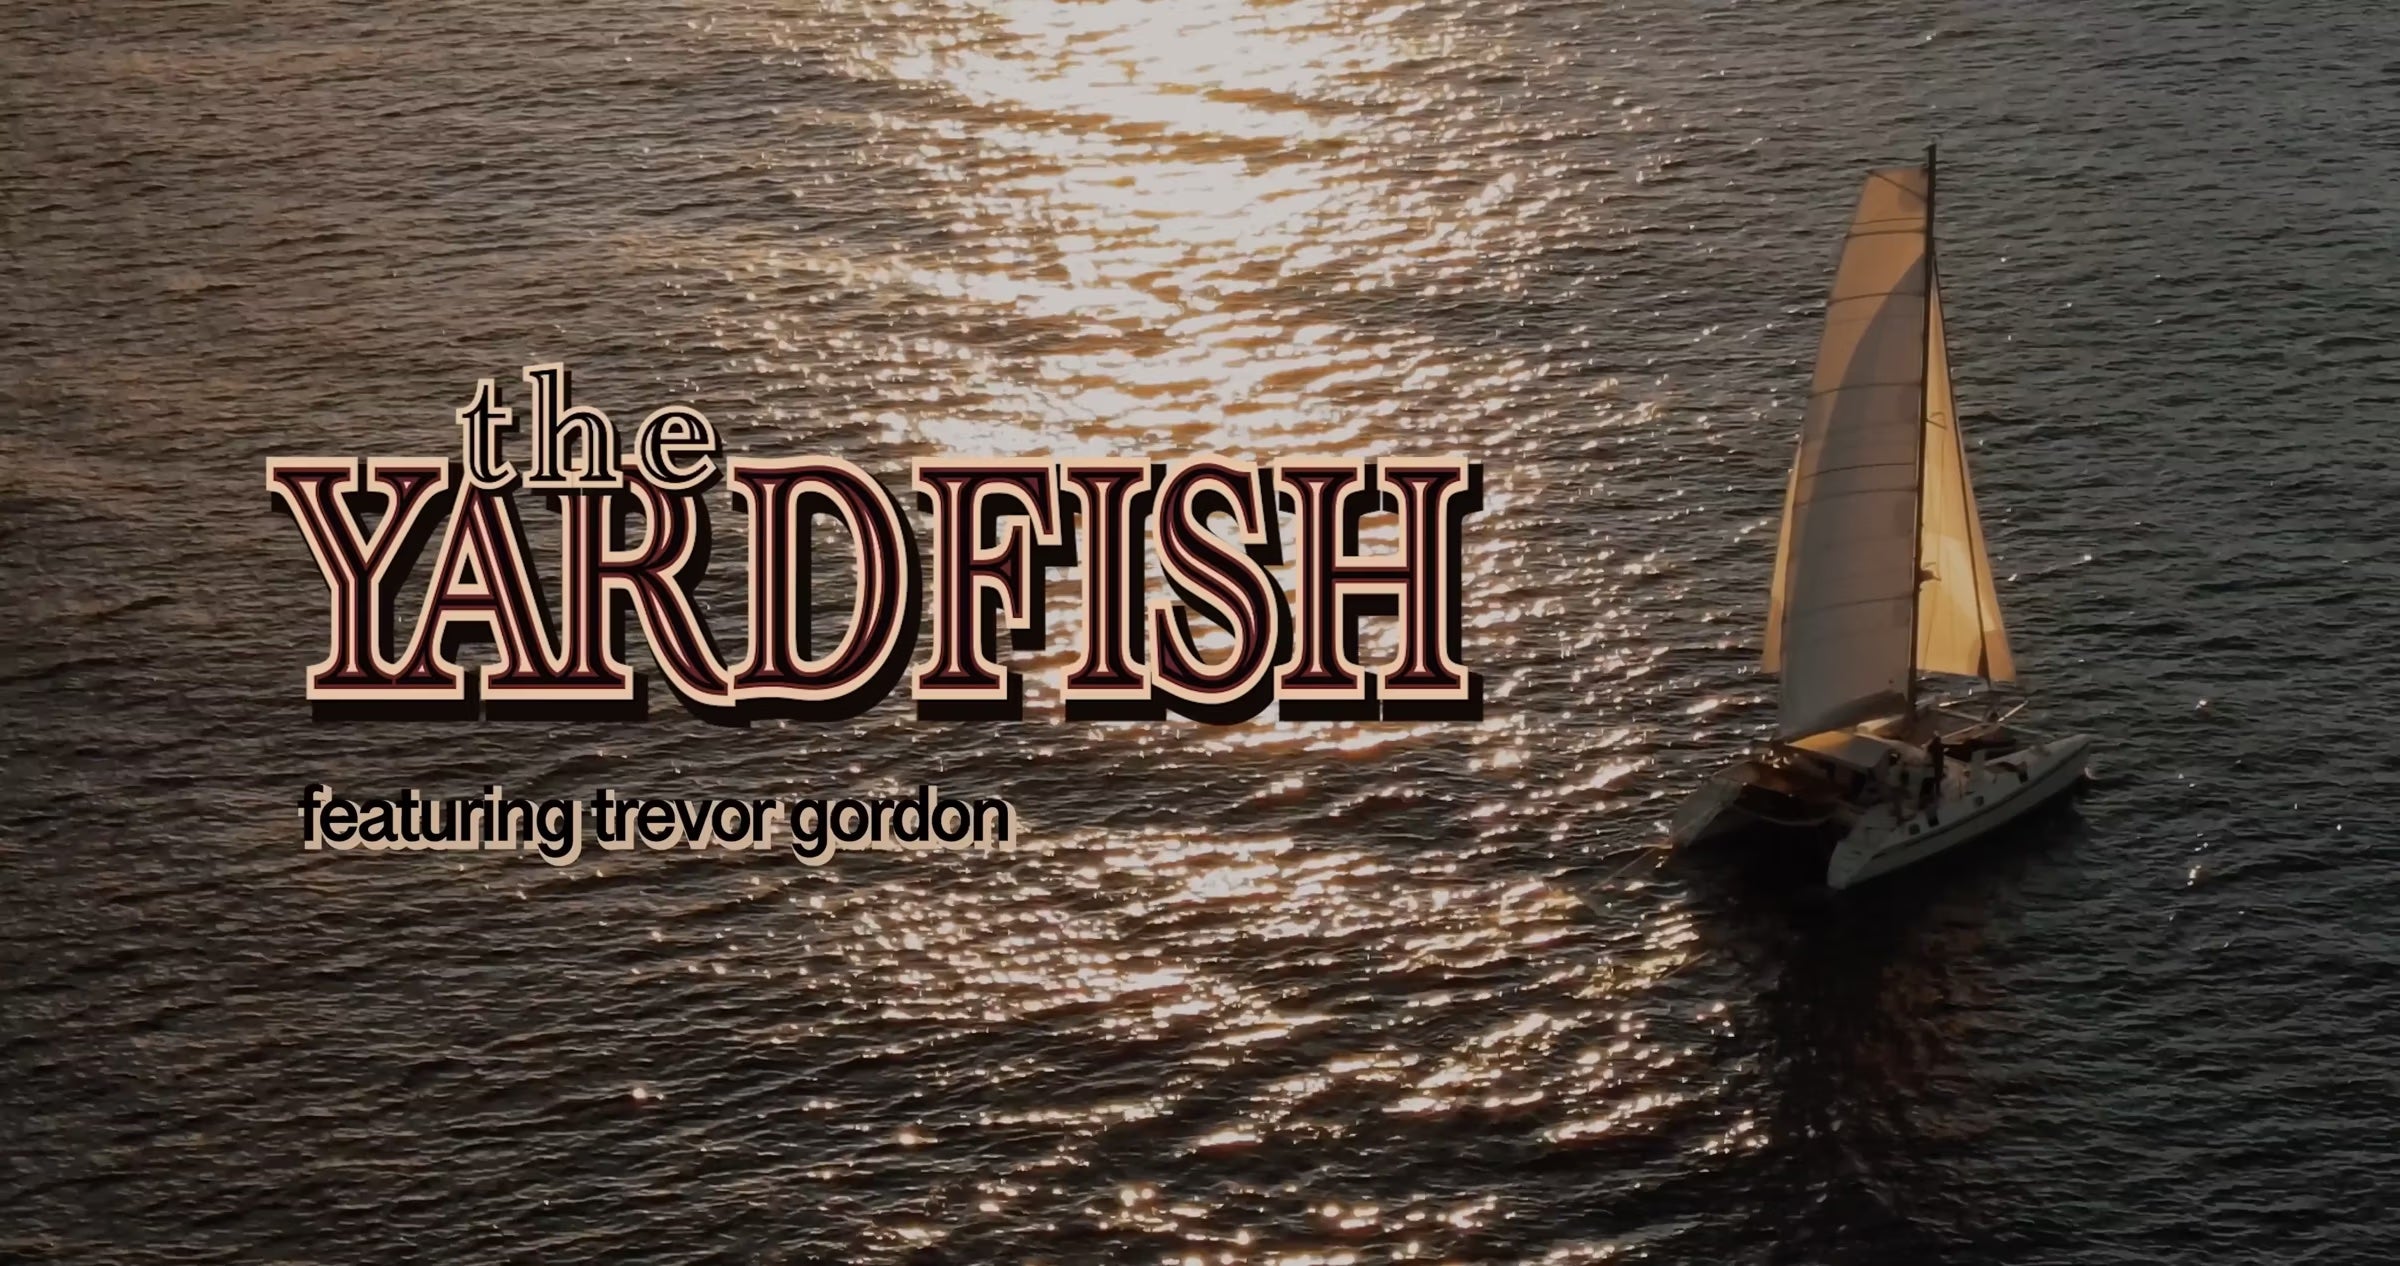 Yardfish - Featuring Trevor Gordon